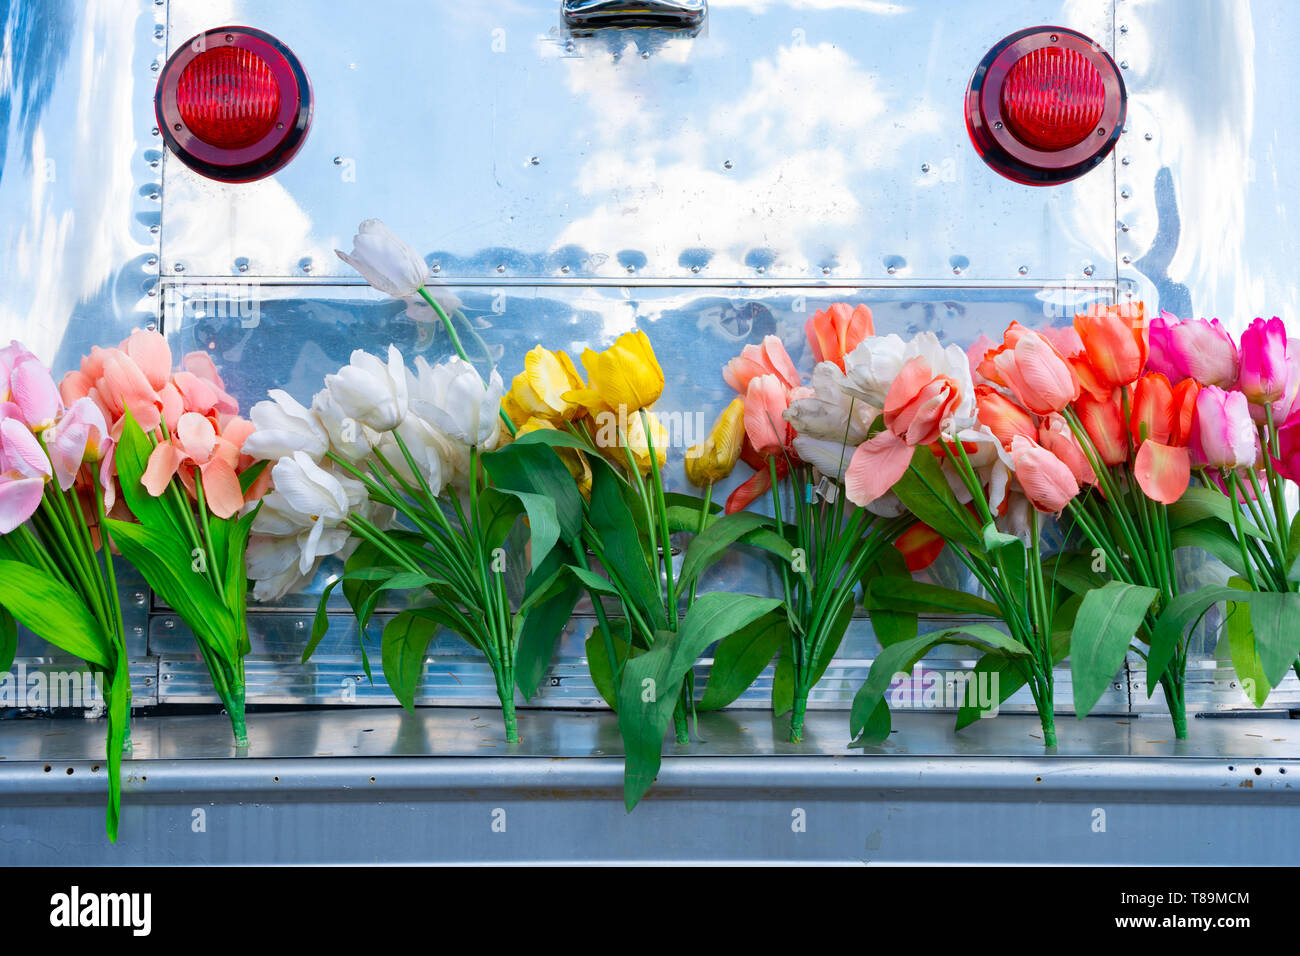 Vintage remolque camper con apartadero de aluminio y un paragolpes portón cubierto de flores de tulipán, representando la época hippie o un divertido estilo de vida. Foto de stock